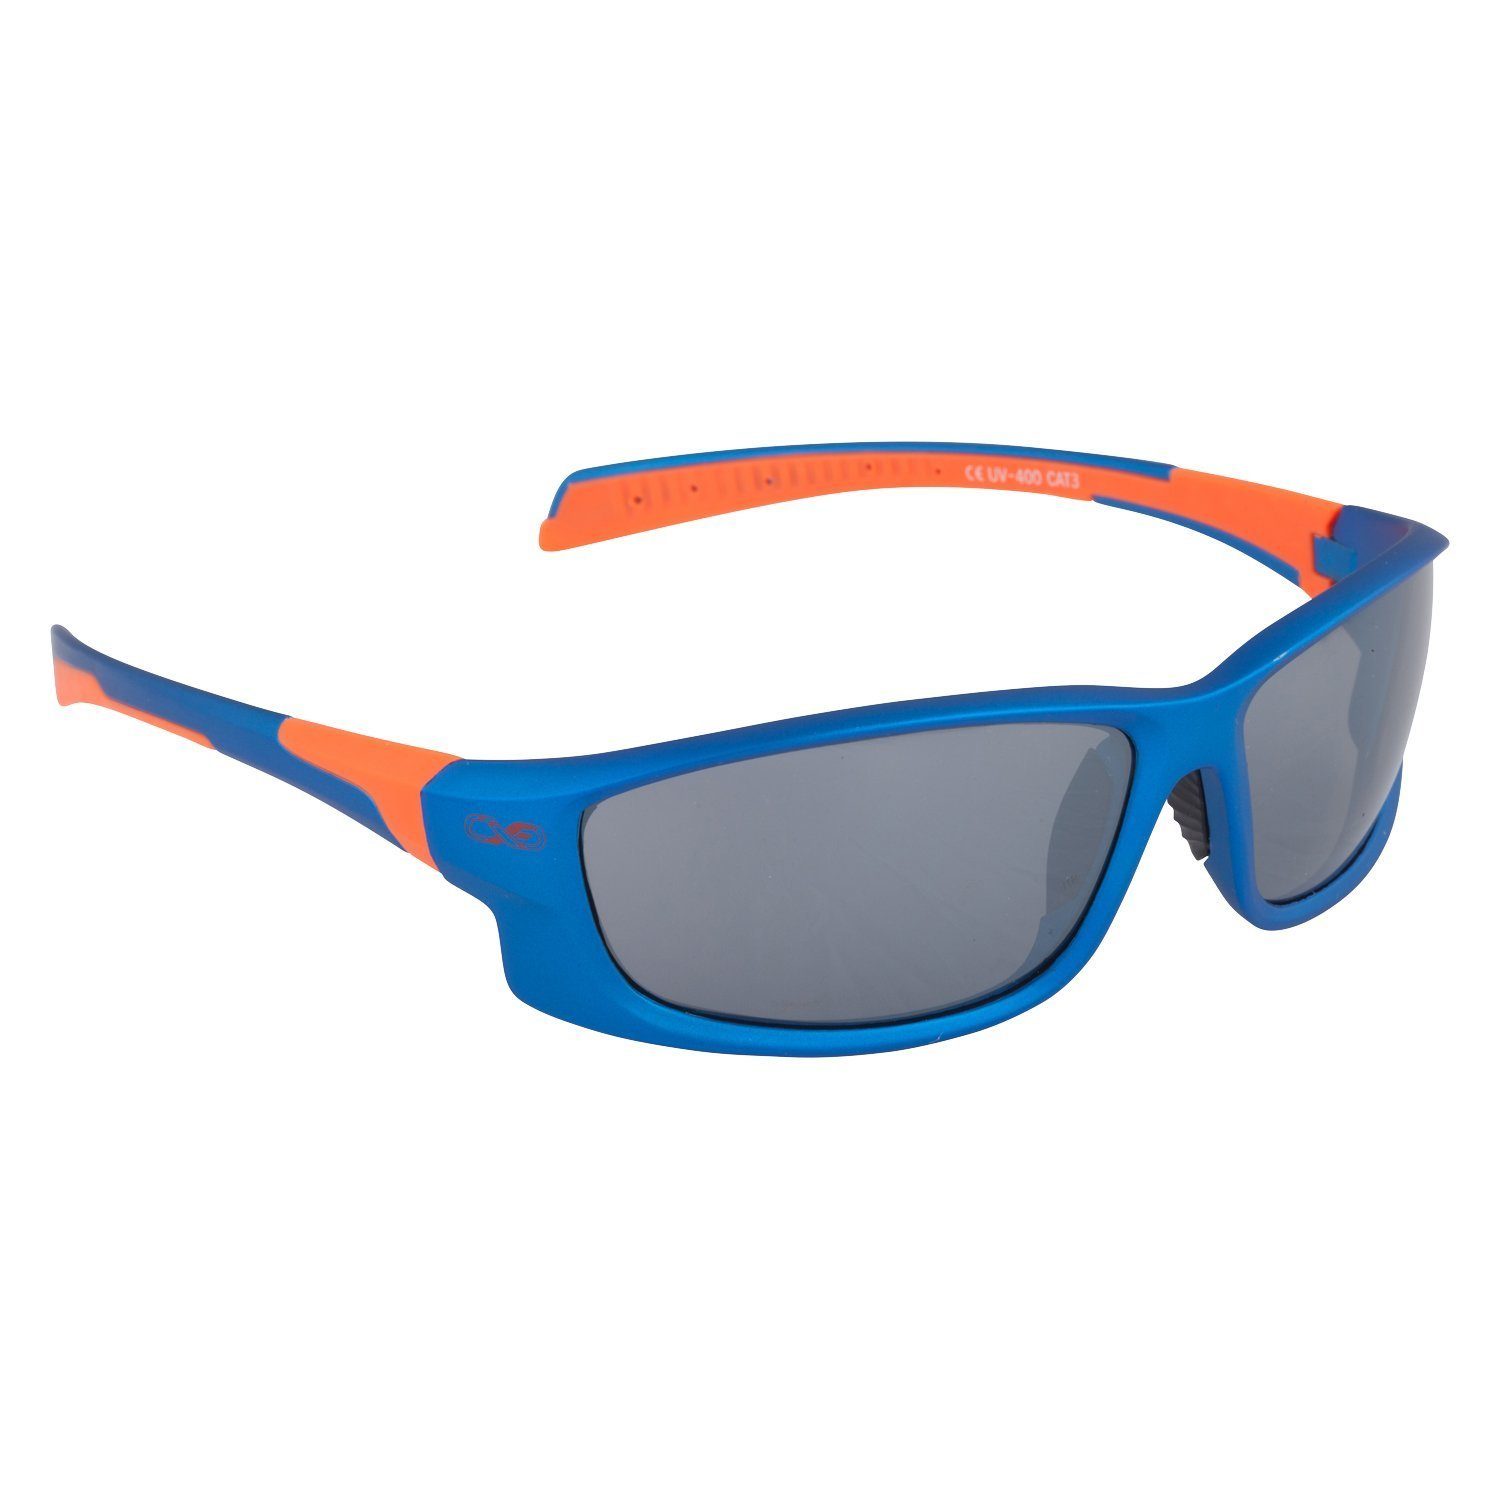 Sportbrille Aufbewahrungsbeutel Sonnenbrille 3 Viwanda Eins (Mit in Farben / Infinite Reinigungstuch)